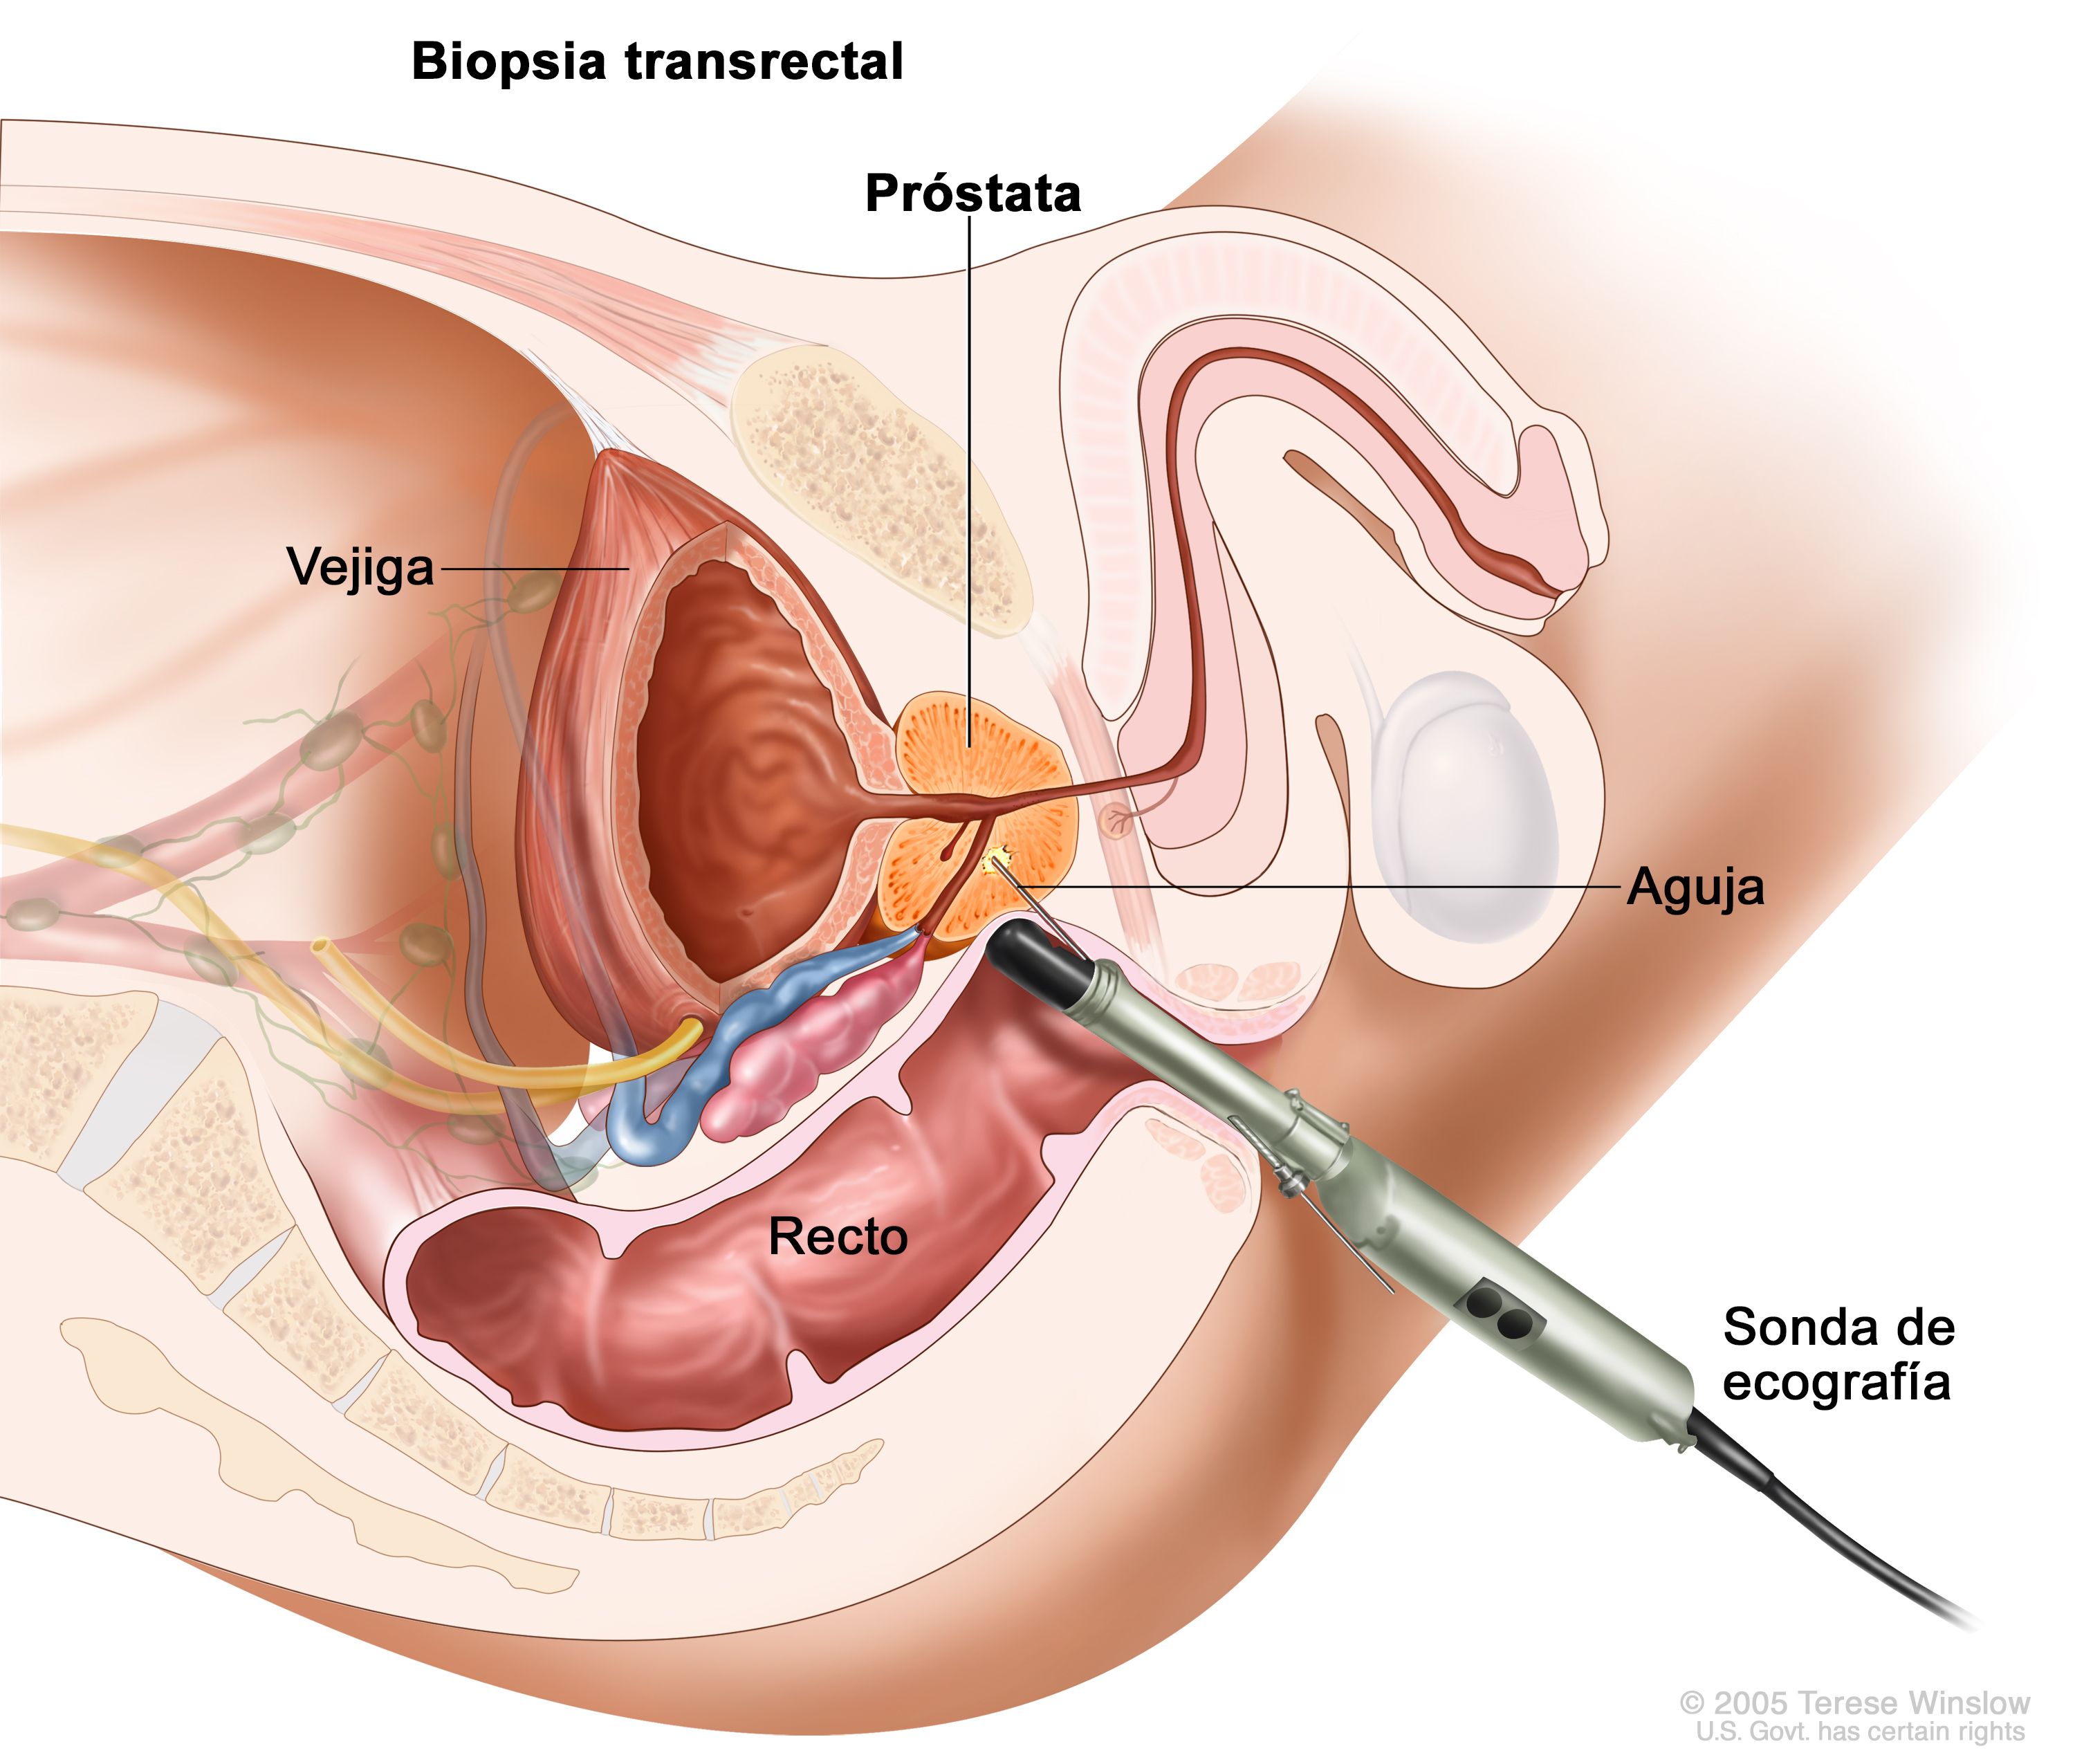 biopsia transrectal de próstata precio